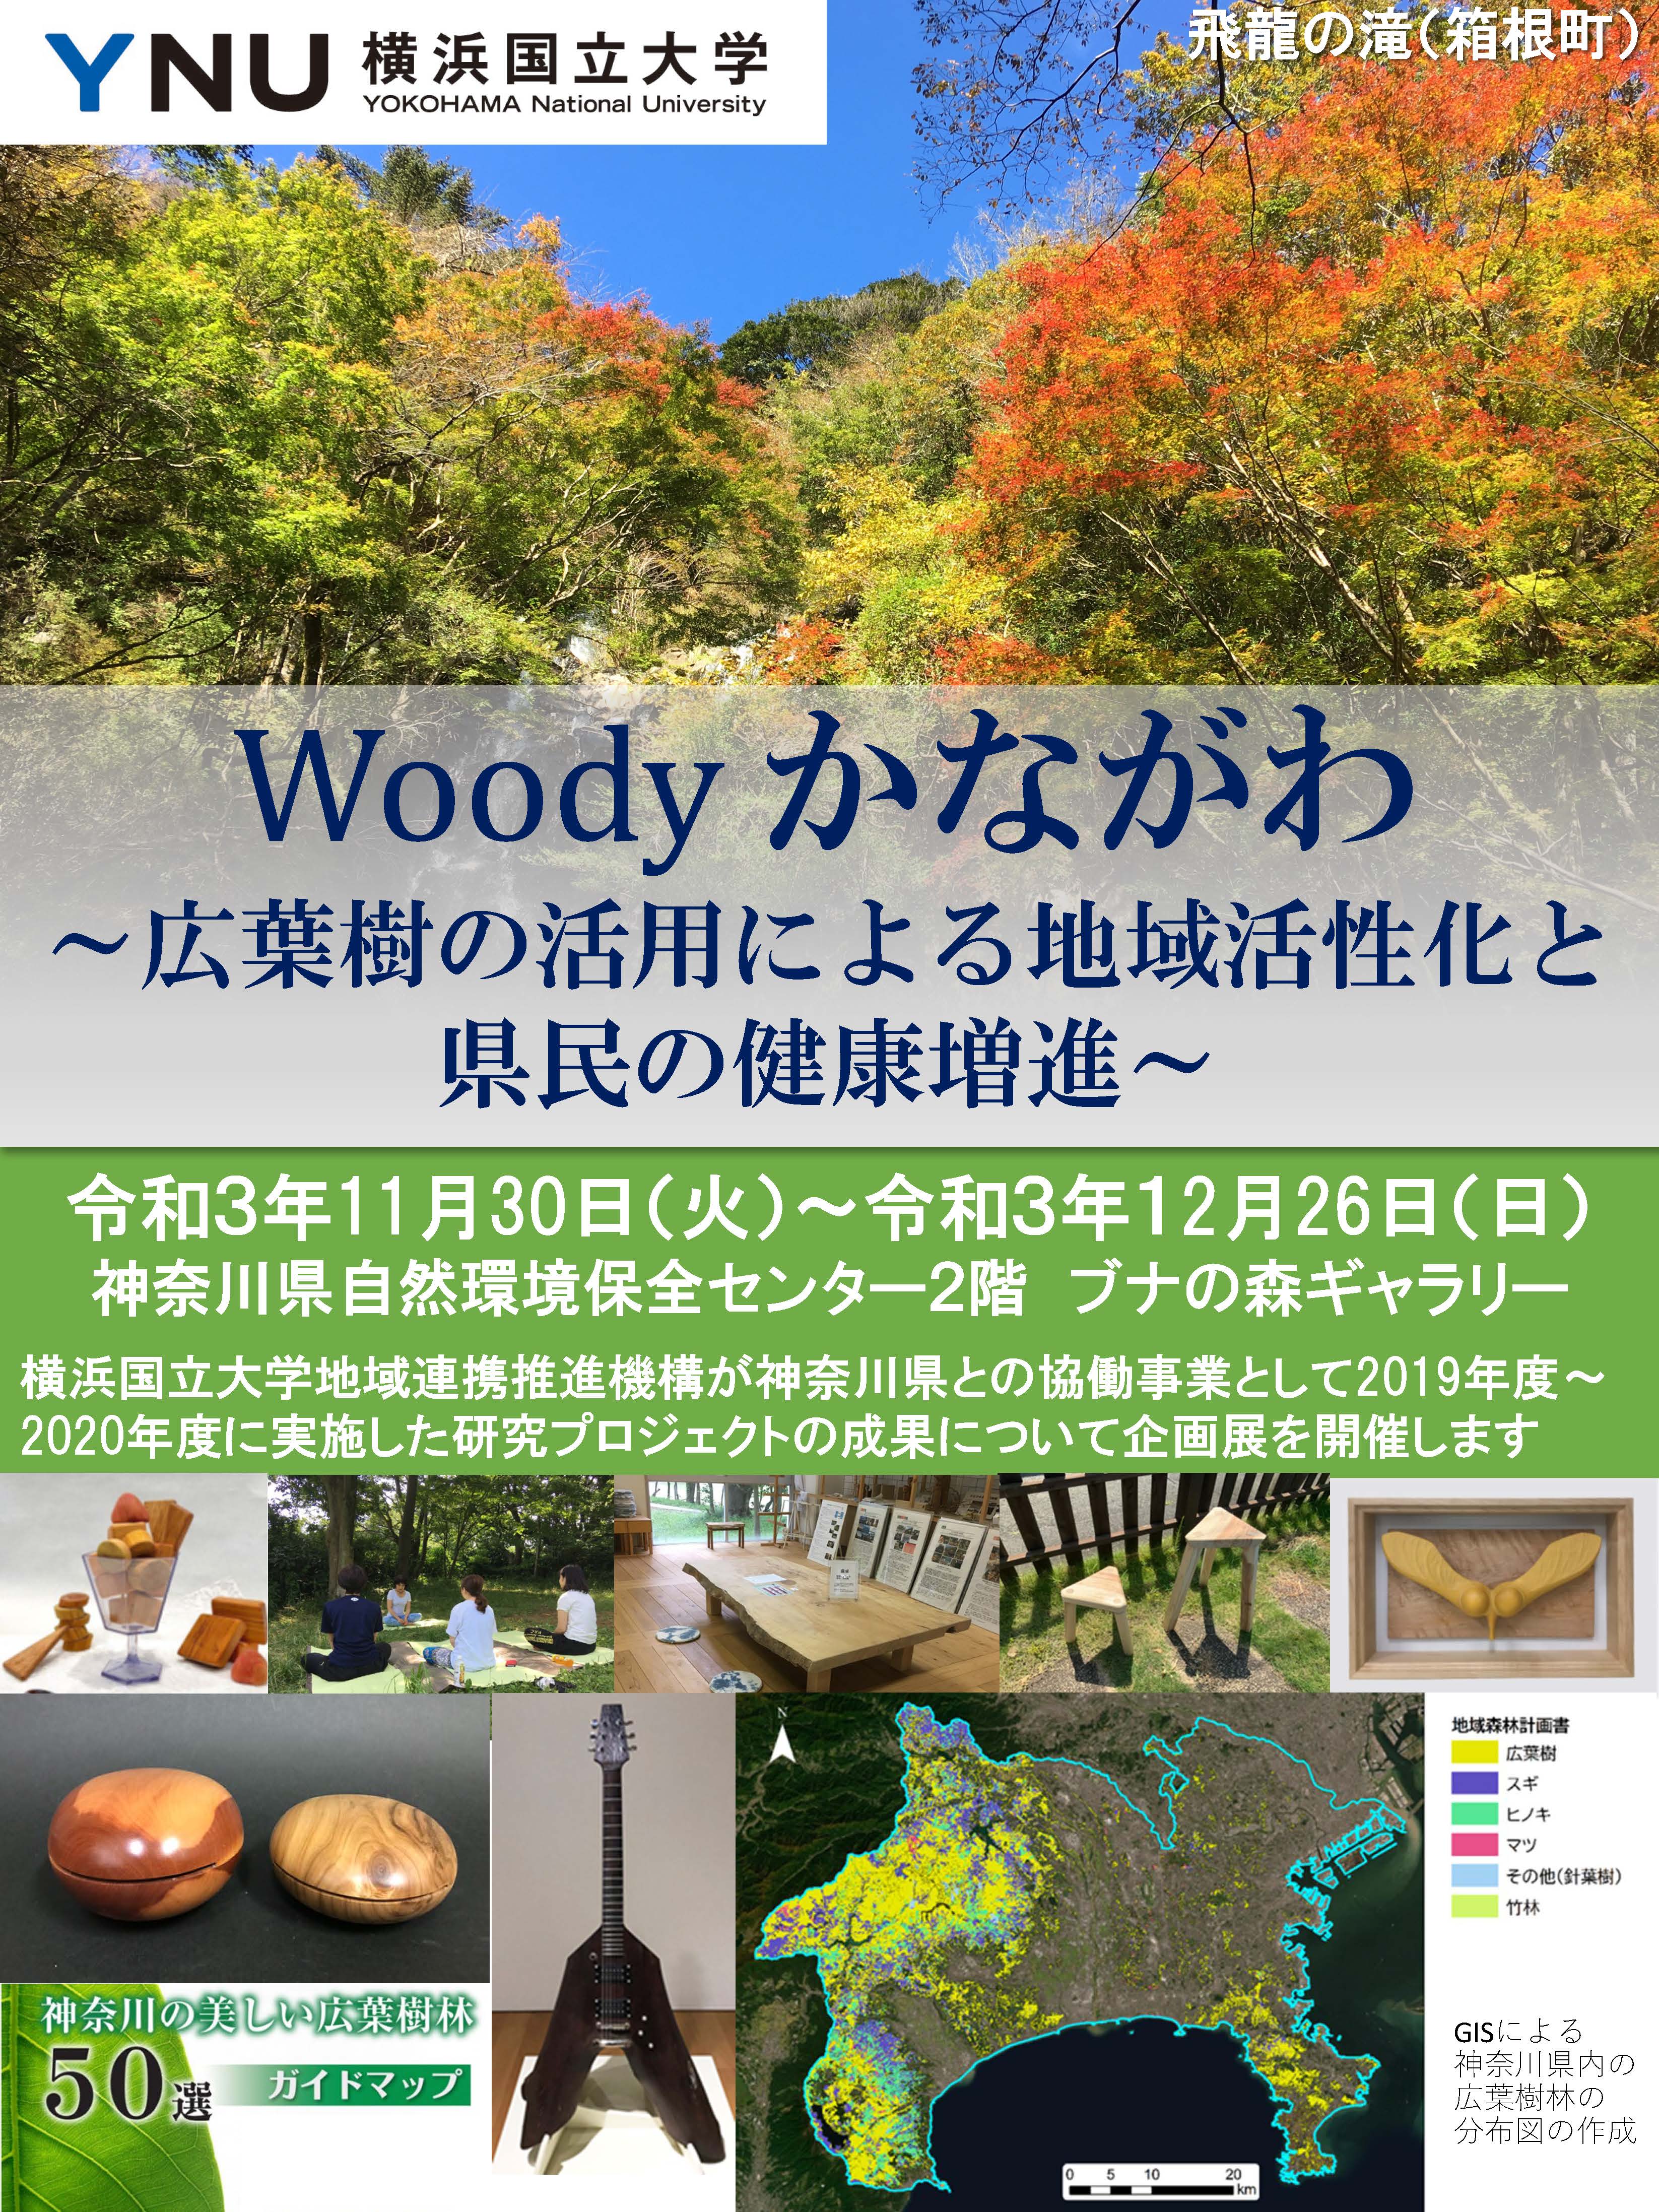 神奈川県自然環境保全センターにて「Woodyかながわ～広葉樹の活用による地域活性化と県民の健康増進～」の研究成果を展示します